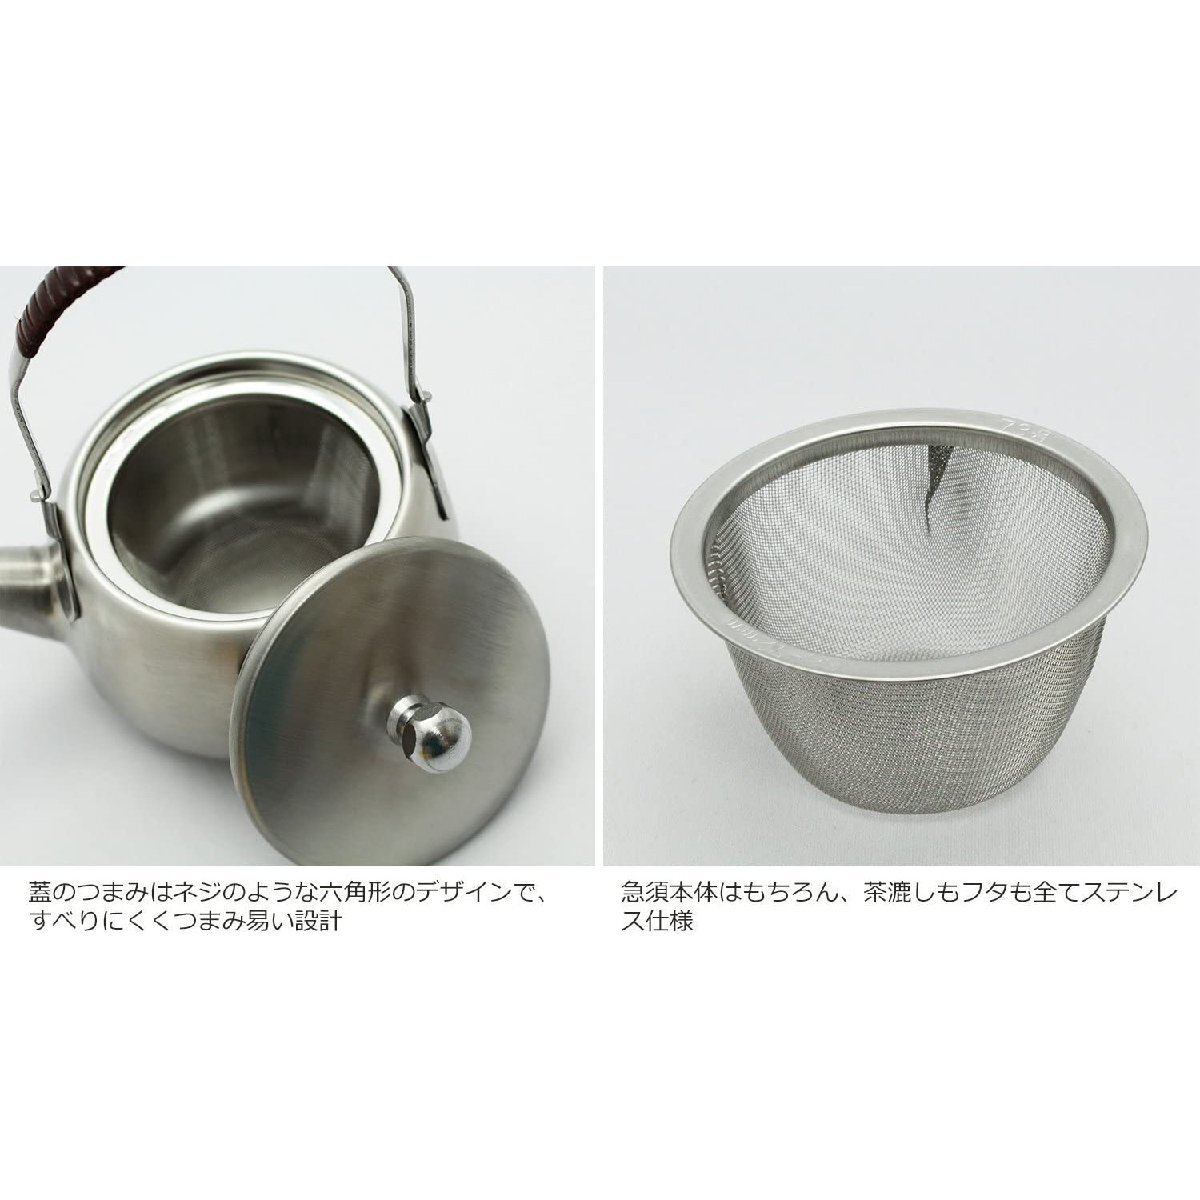 マットな質感 艶消しの ステンレス急須 360ml 日本製 茶こし付き すべりにくくつまみ易い すっきりとしたデザイン_画像3